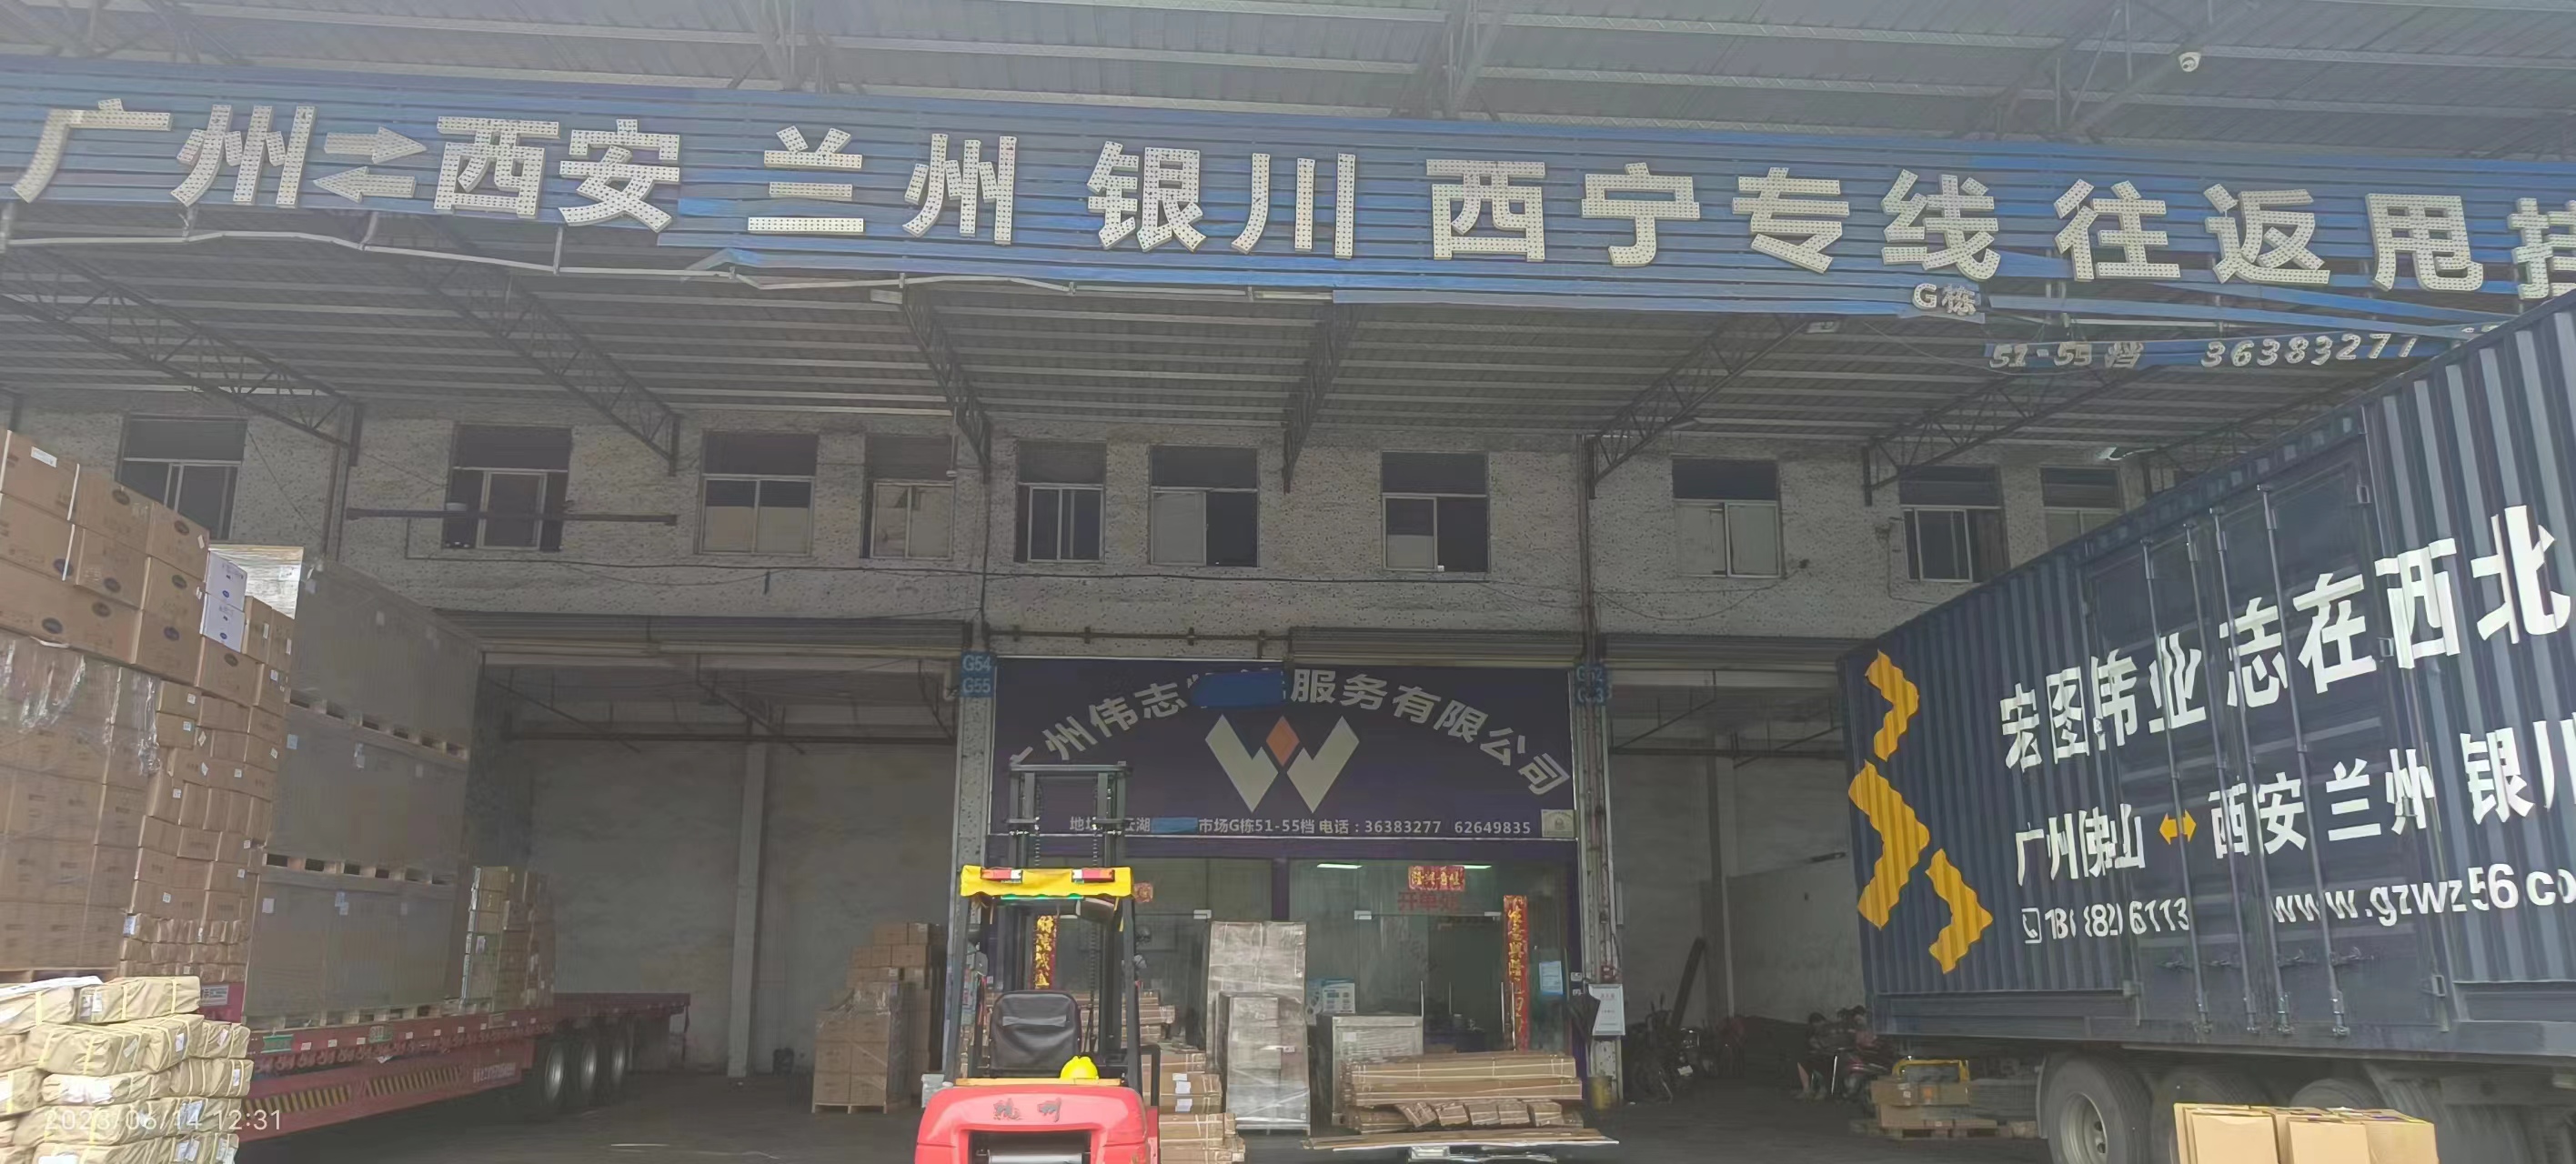 广州发西宁长途公路 整车零担 往返甩挂 大件设备运输物流公司    广州往返西宁陆运专线